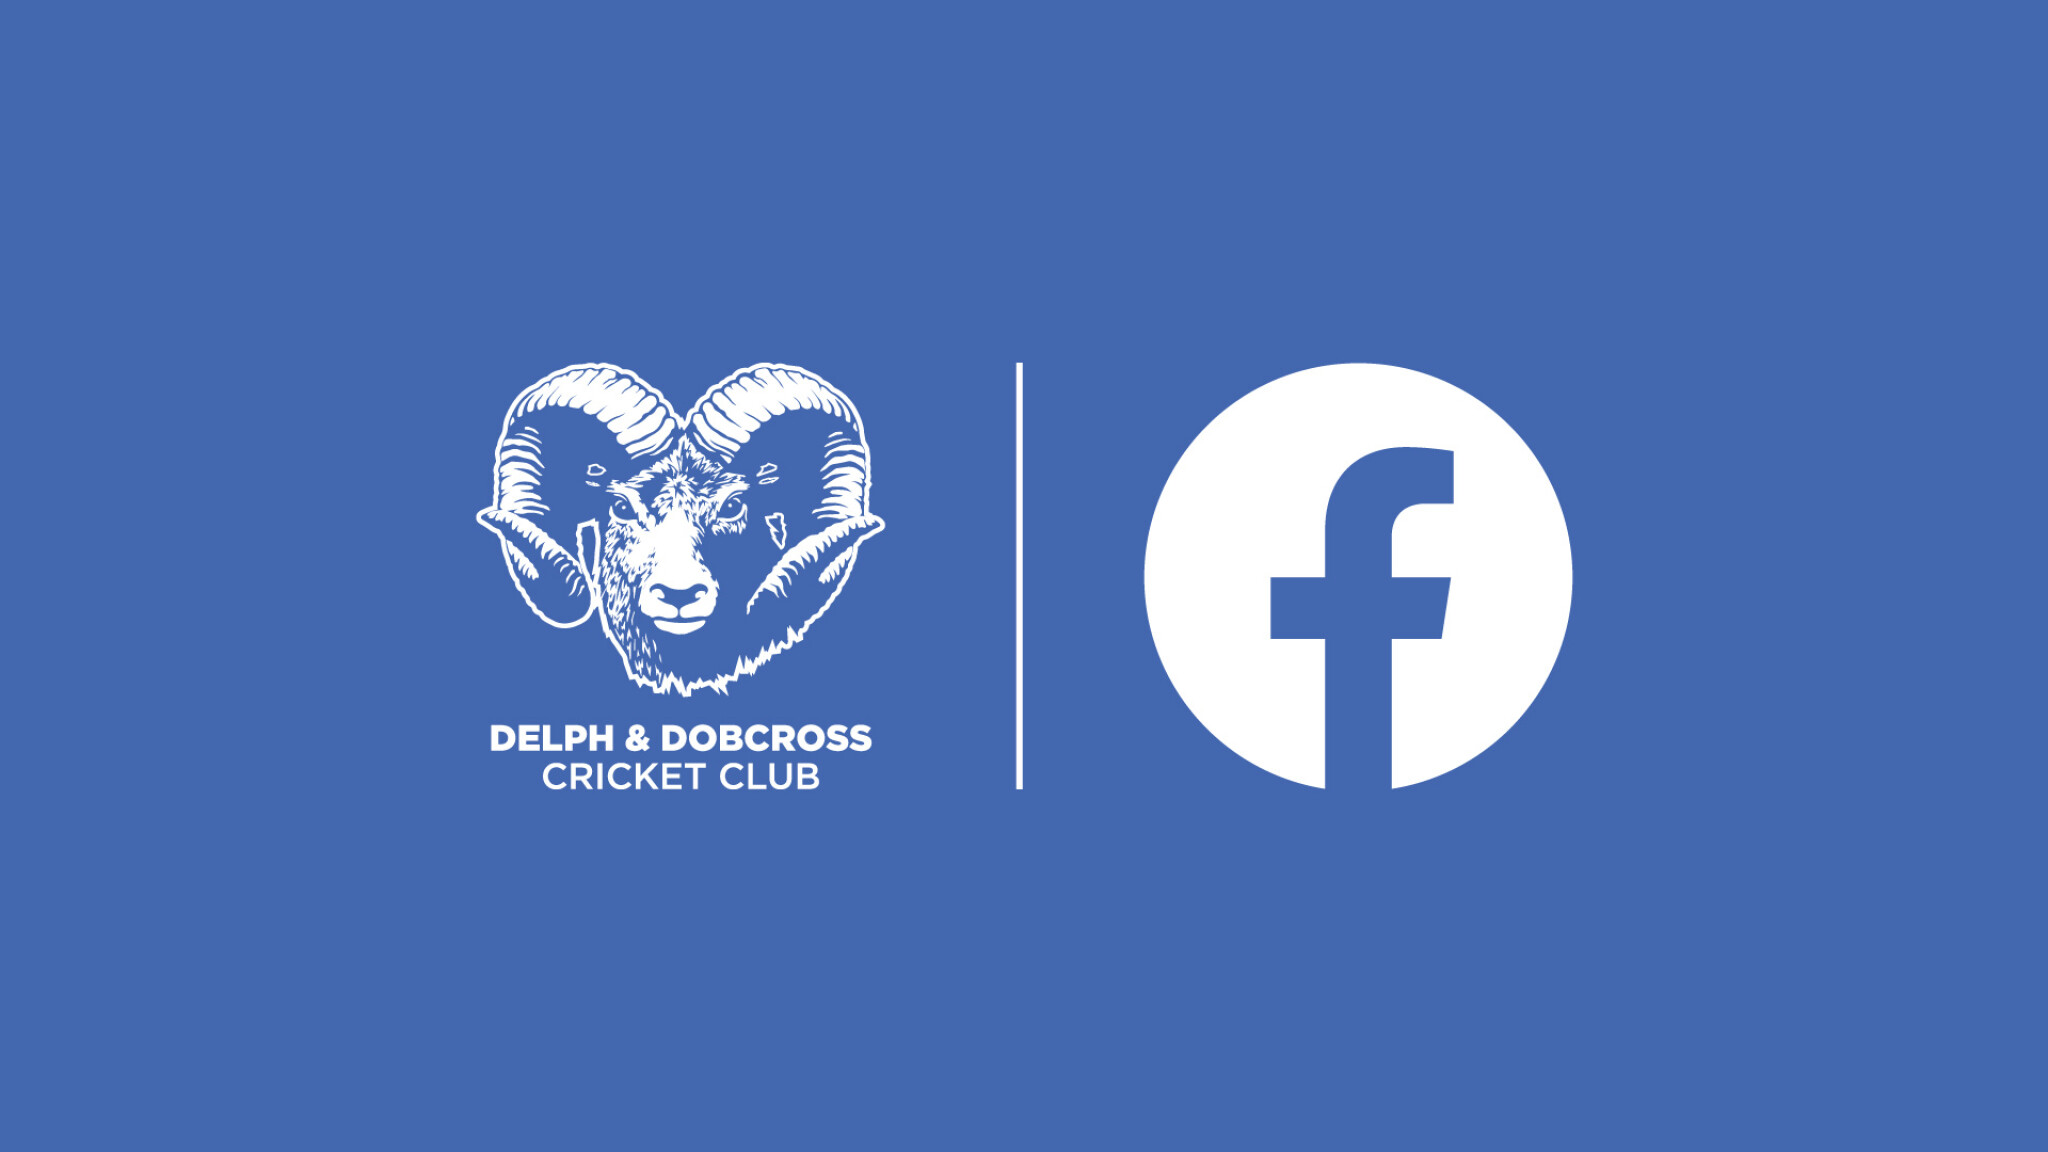 DDCC-socials_FB-banner.jpg